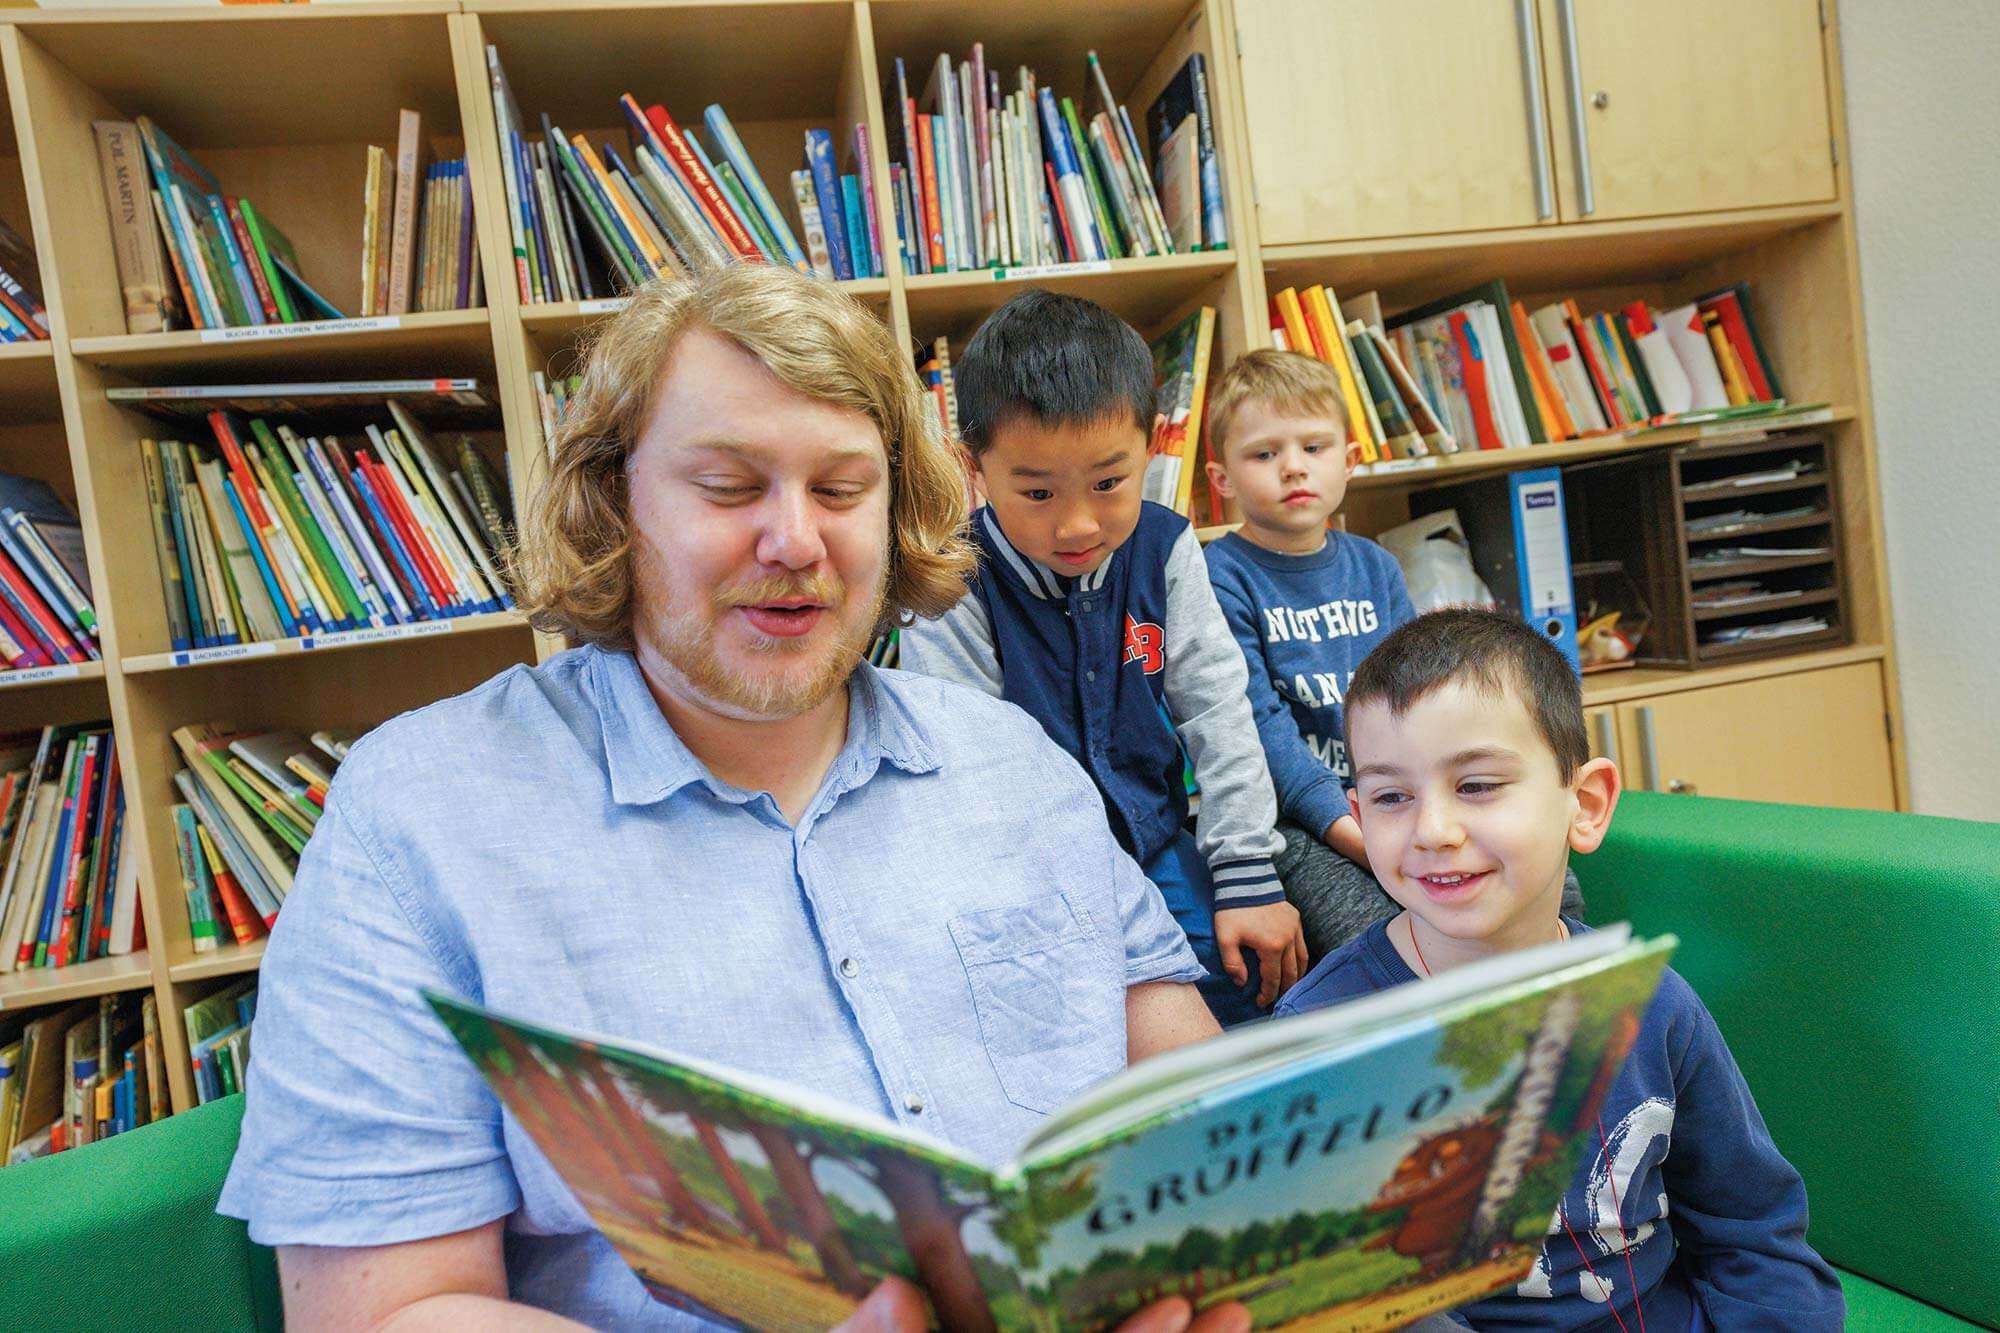 "Ein junger Mitarbeiter der Städtischen Kindertagesstätte liest begeistert aus einem Kinderbuch vor, während drei aufmerksame Kinder gespannt lauschen